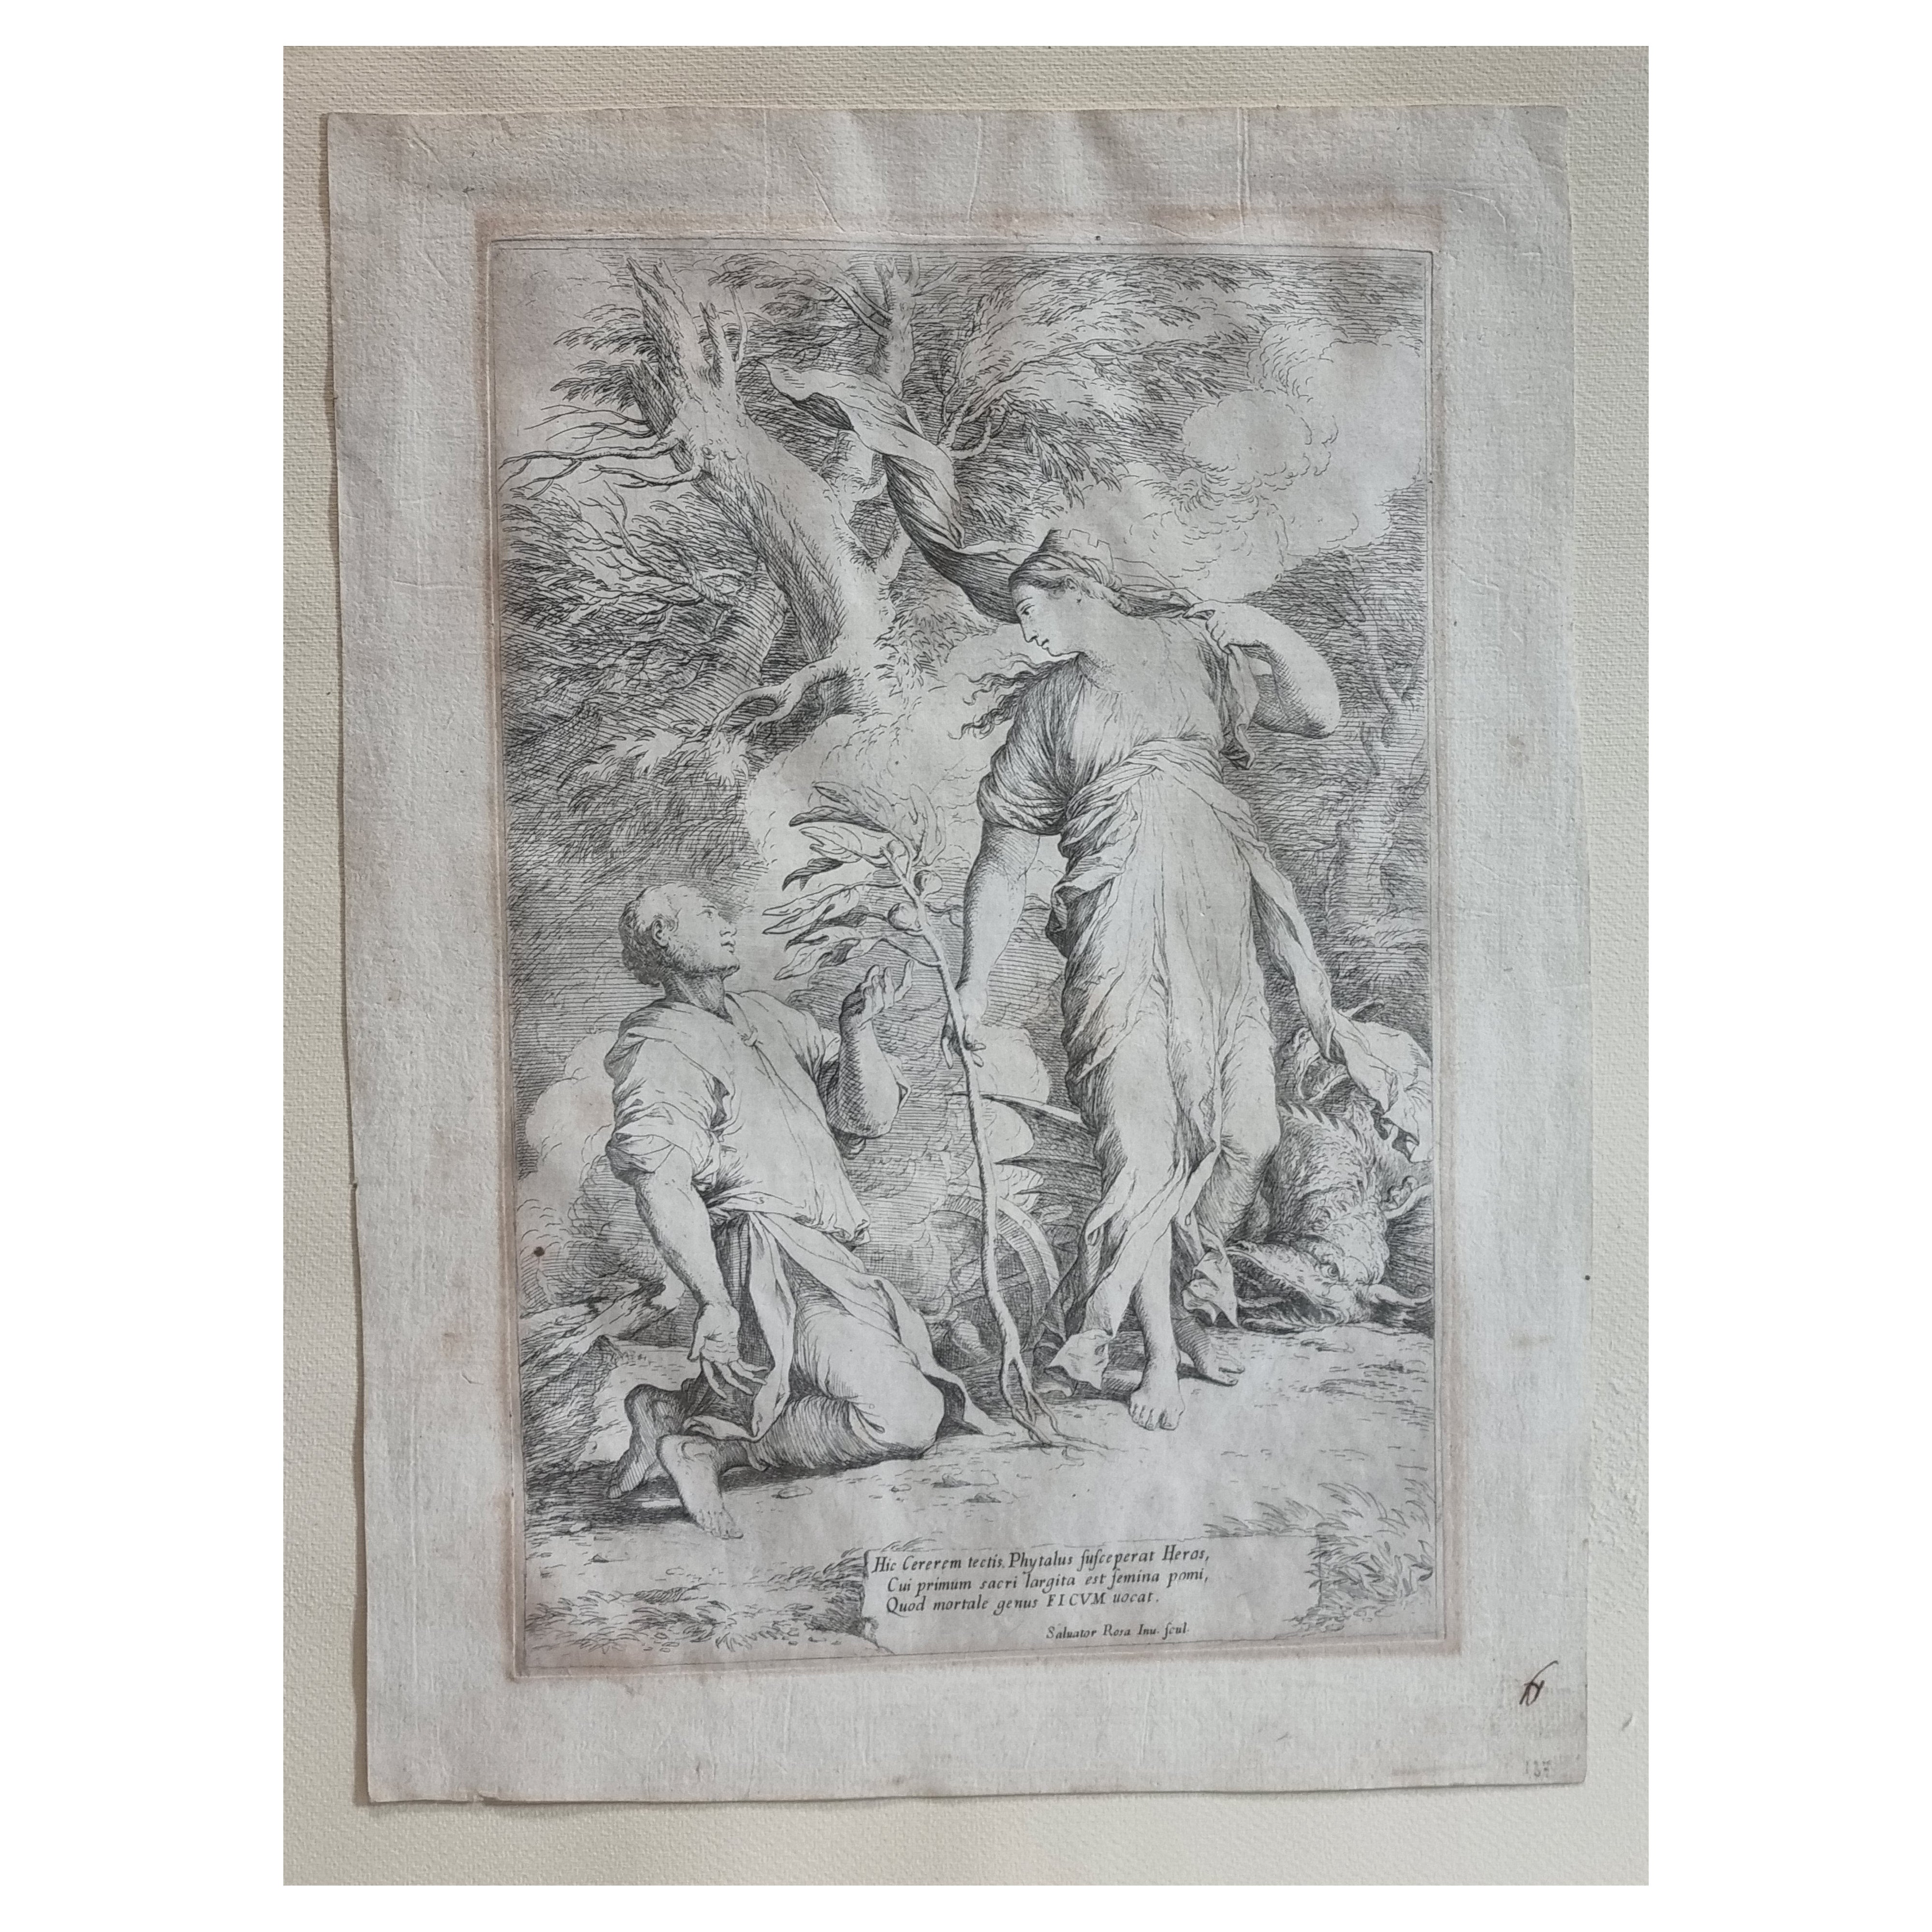 Radierung und Kaltnadelradierung „Keramik und Phytalus“ aus dem 17. Jahrhundert von Salvator Rosa, 1662